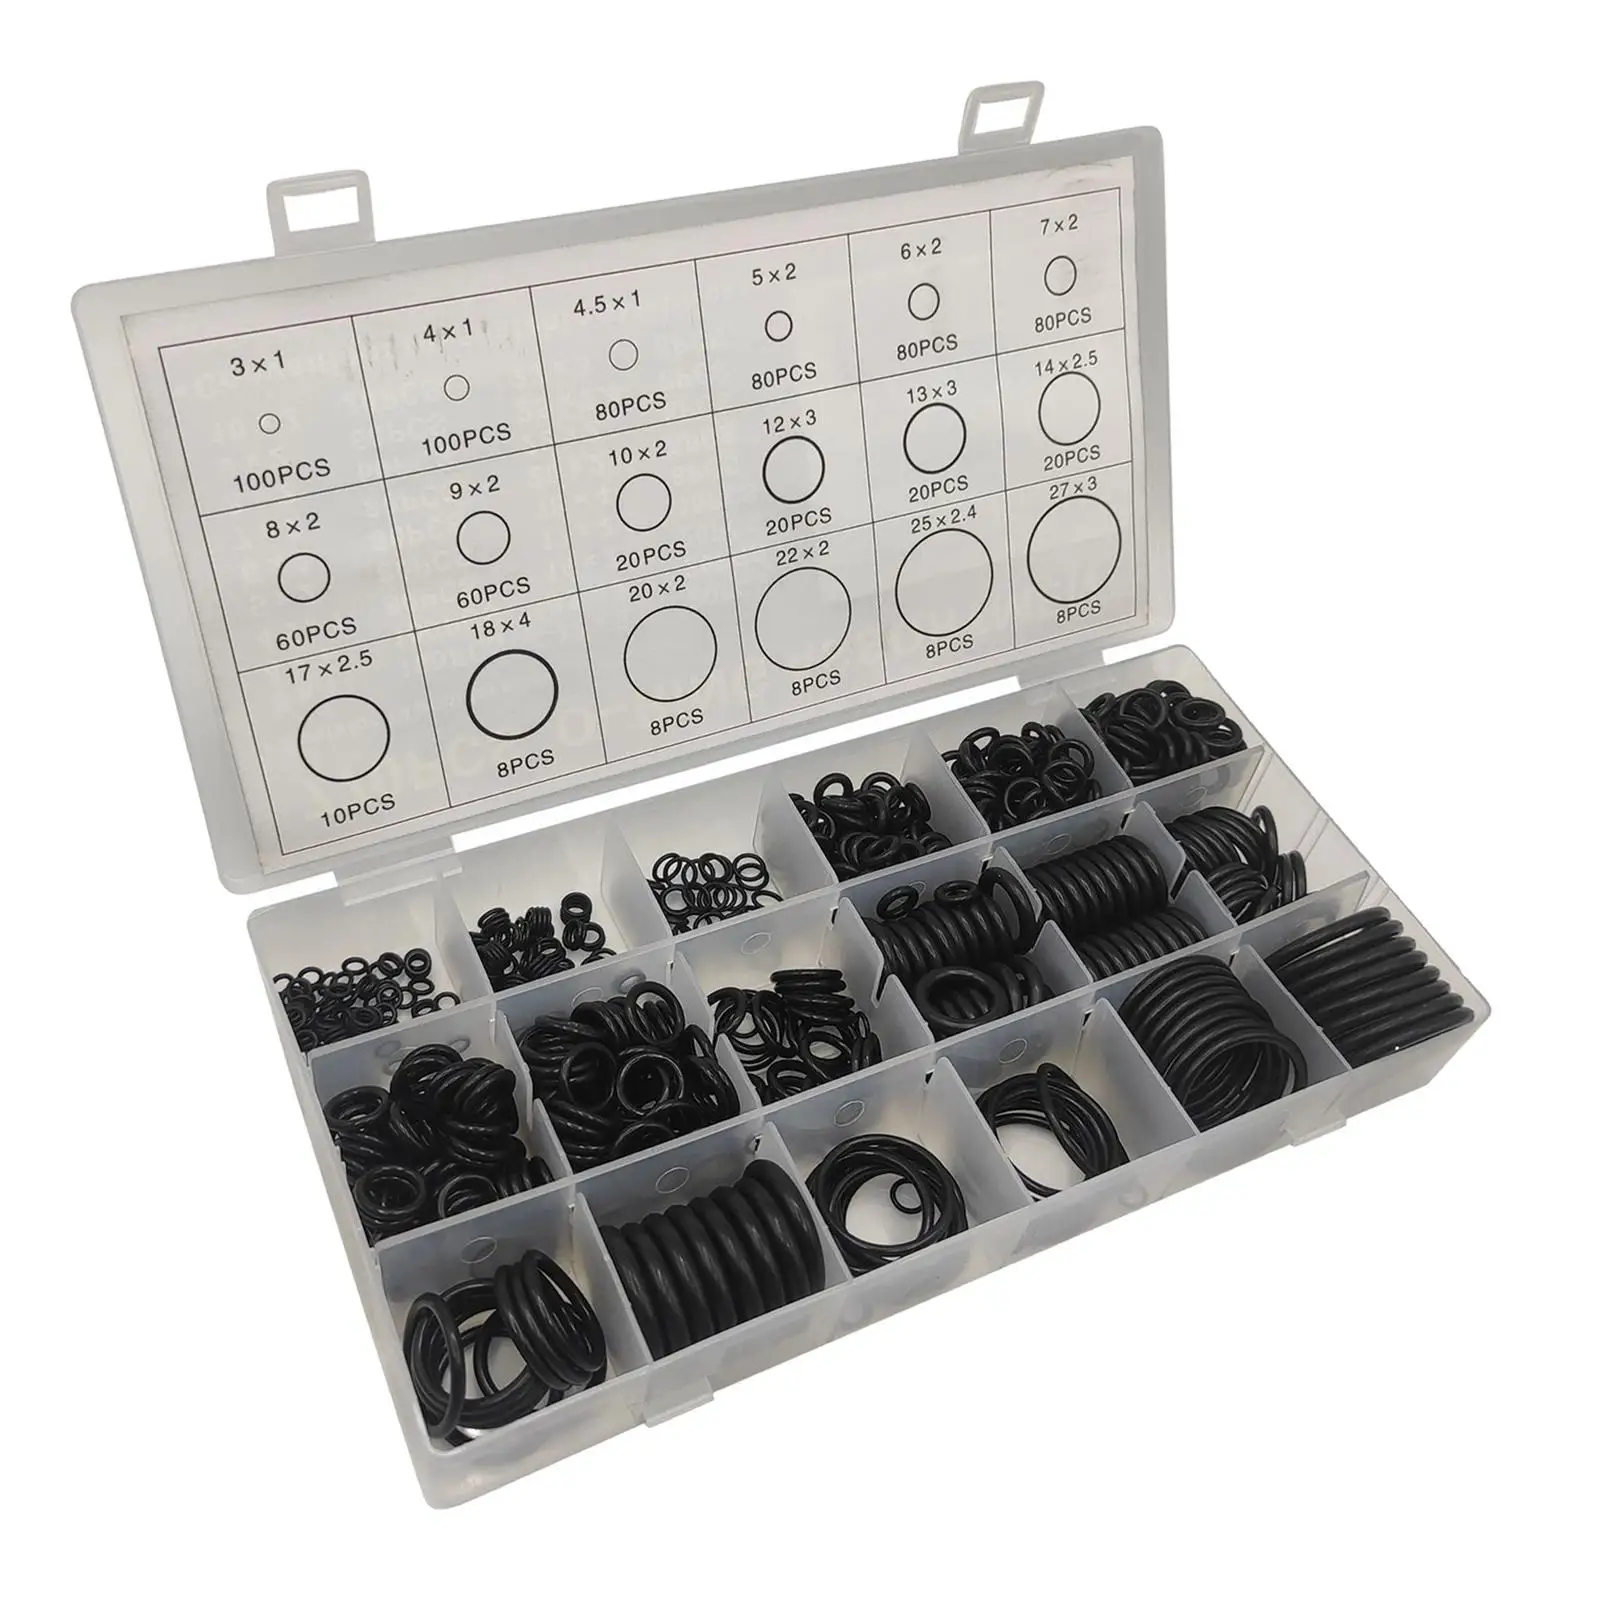 770 O Ring Gasket Kit Black for Plumbing Washer Seal Mechanic Repairs